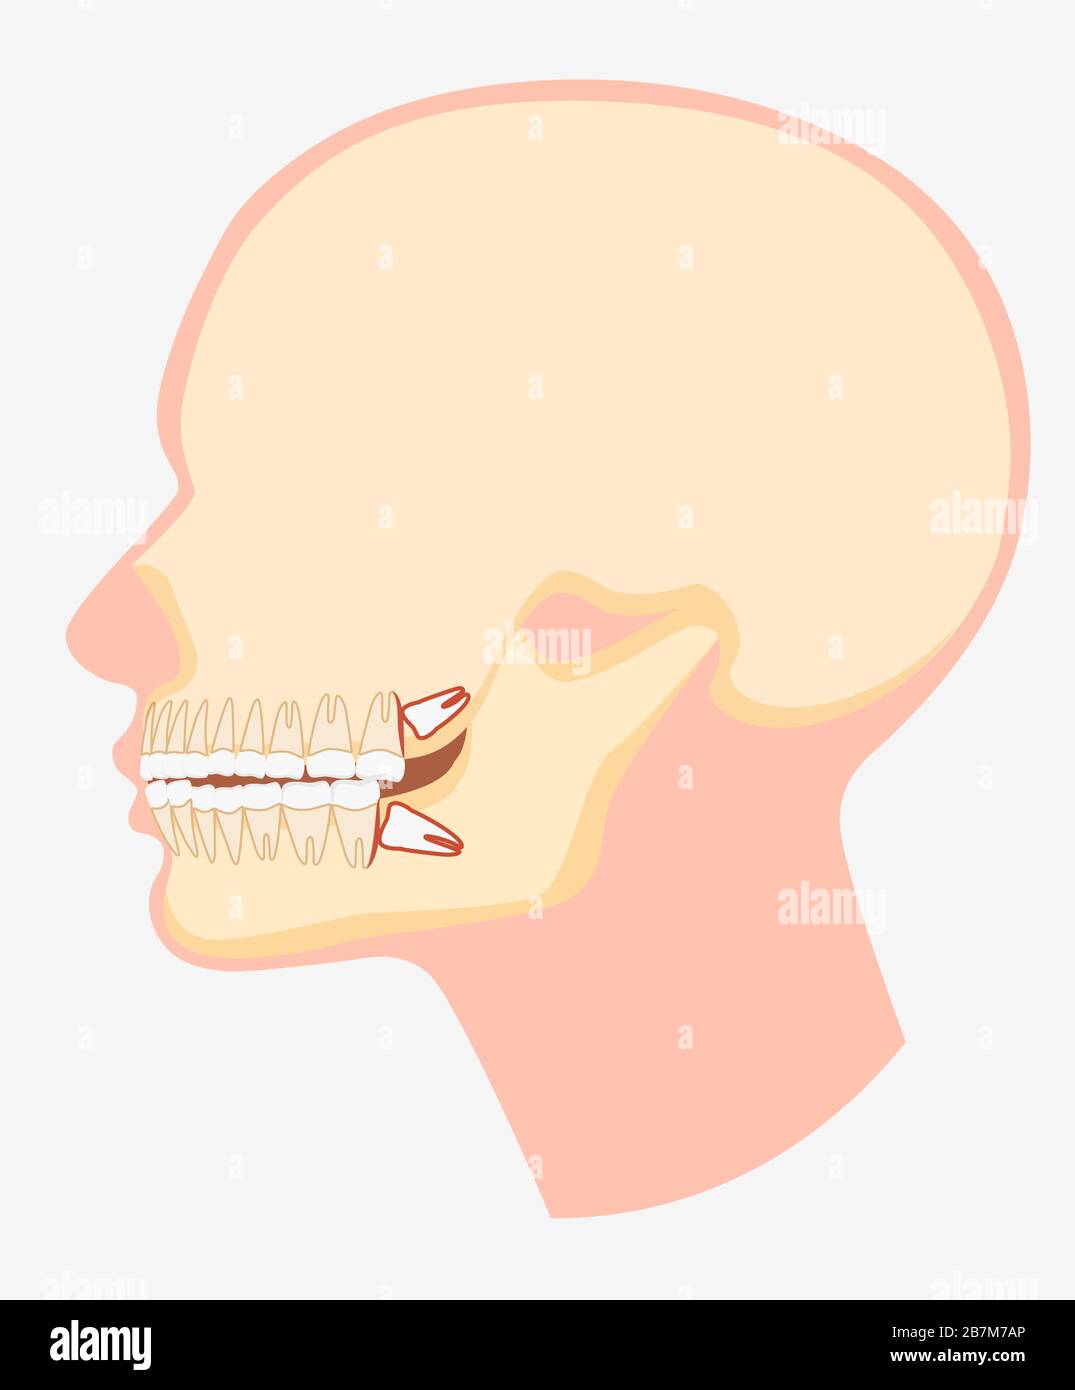 Modèle de dessin animé de l'illustration plate vectorielle de la vue latérale de la mâchoire dentaire humaine Illustration de Vecteur